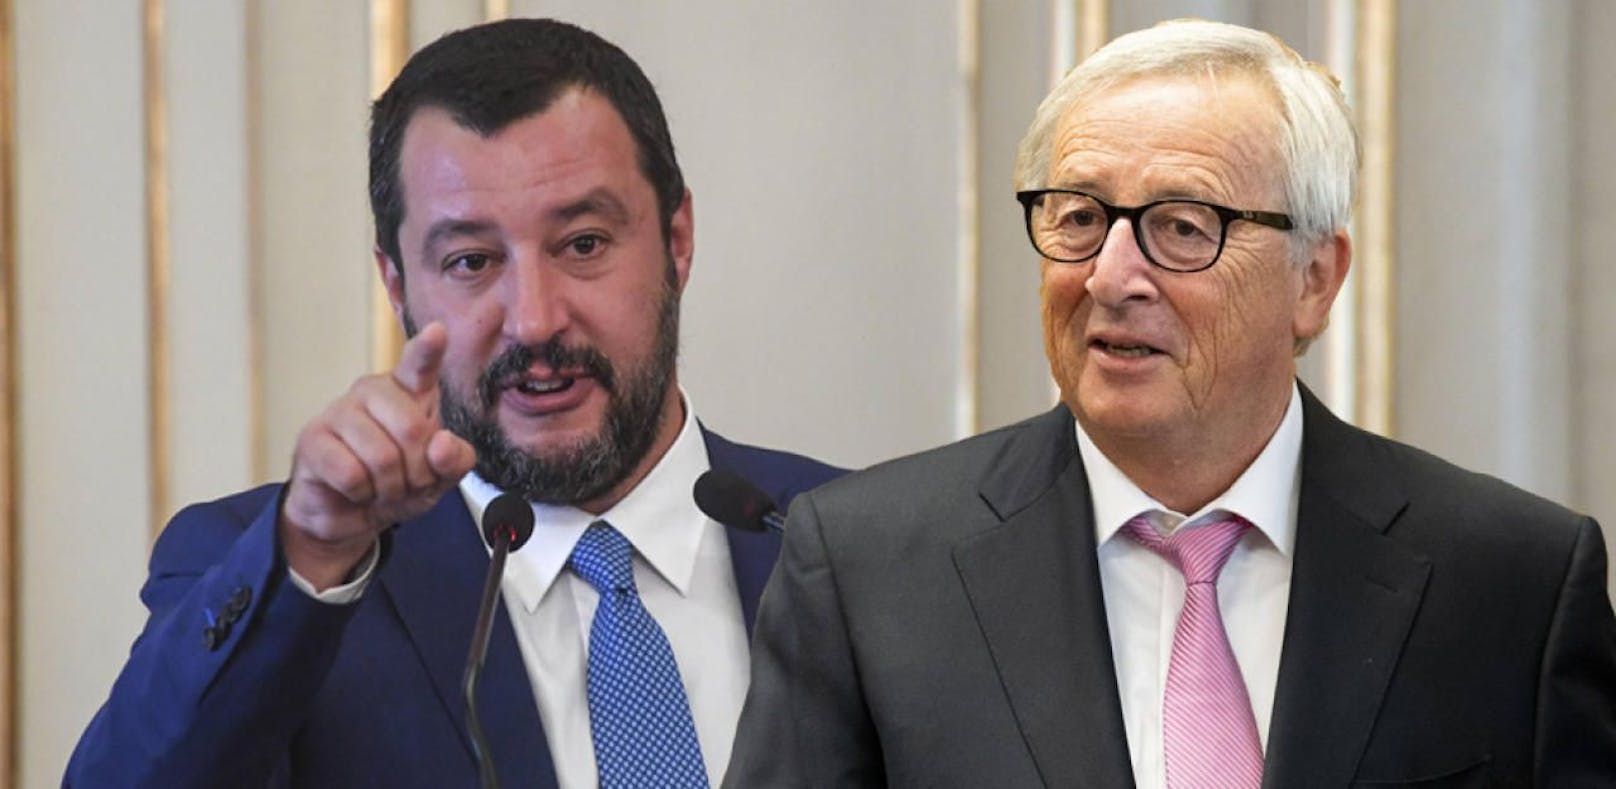 Salvini will Junckers Nachfolger werden